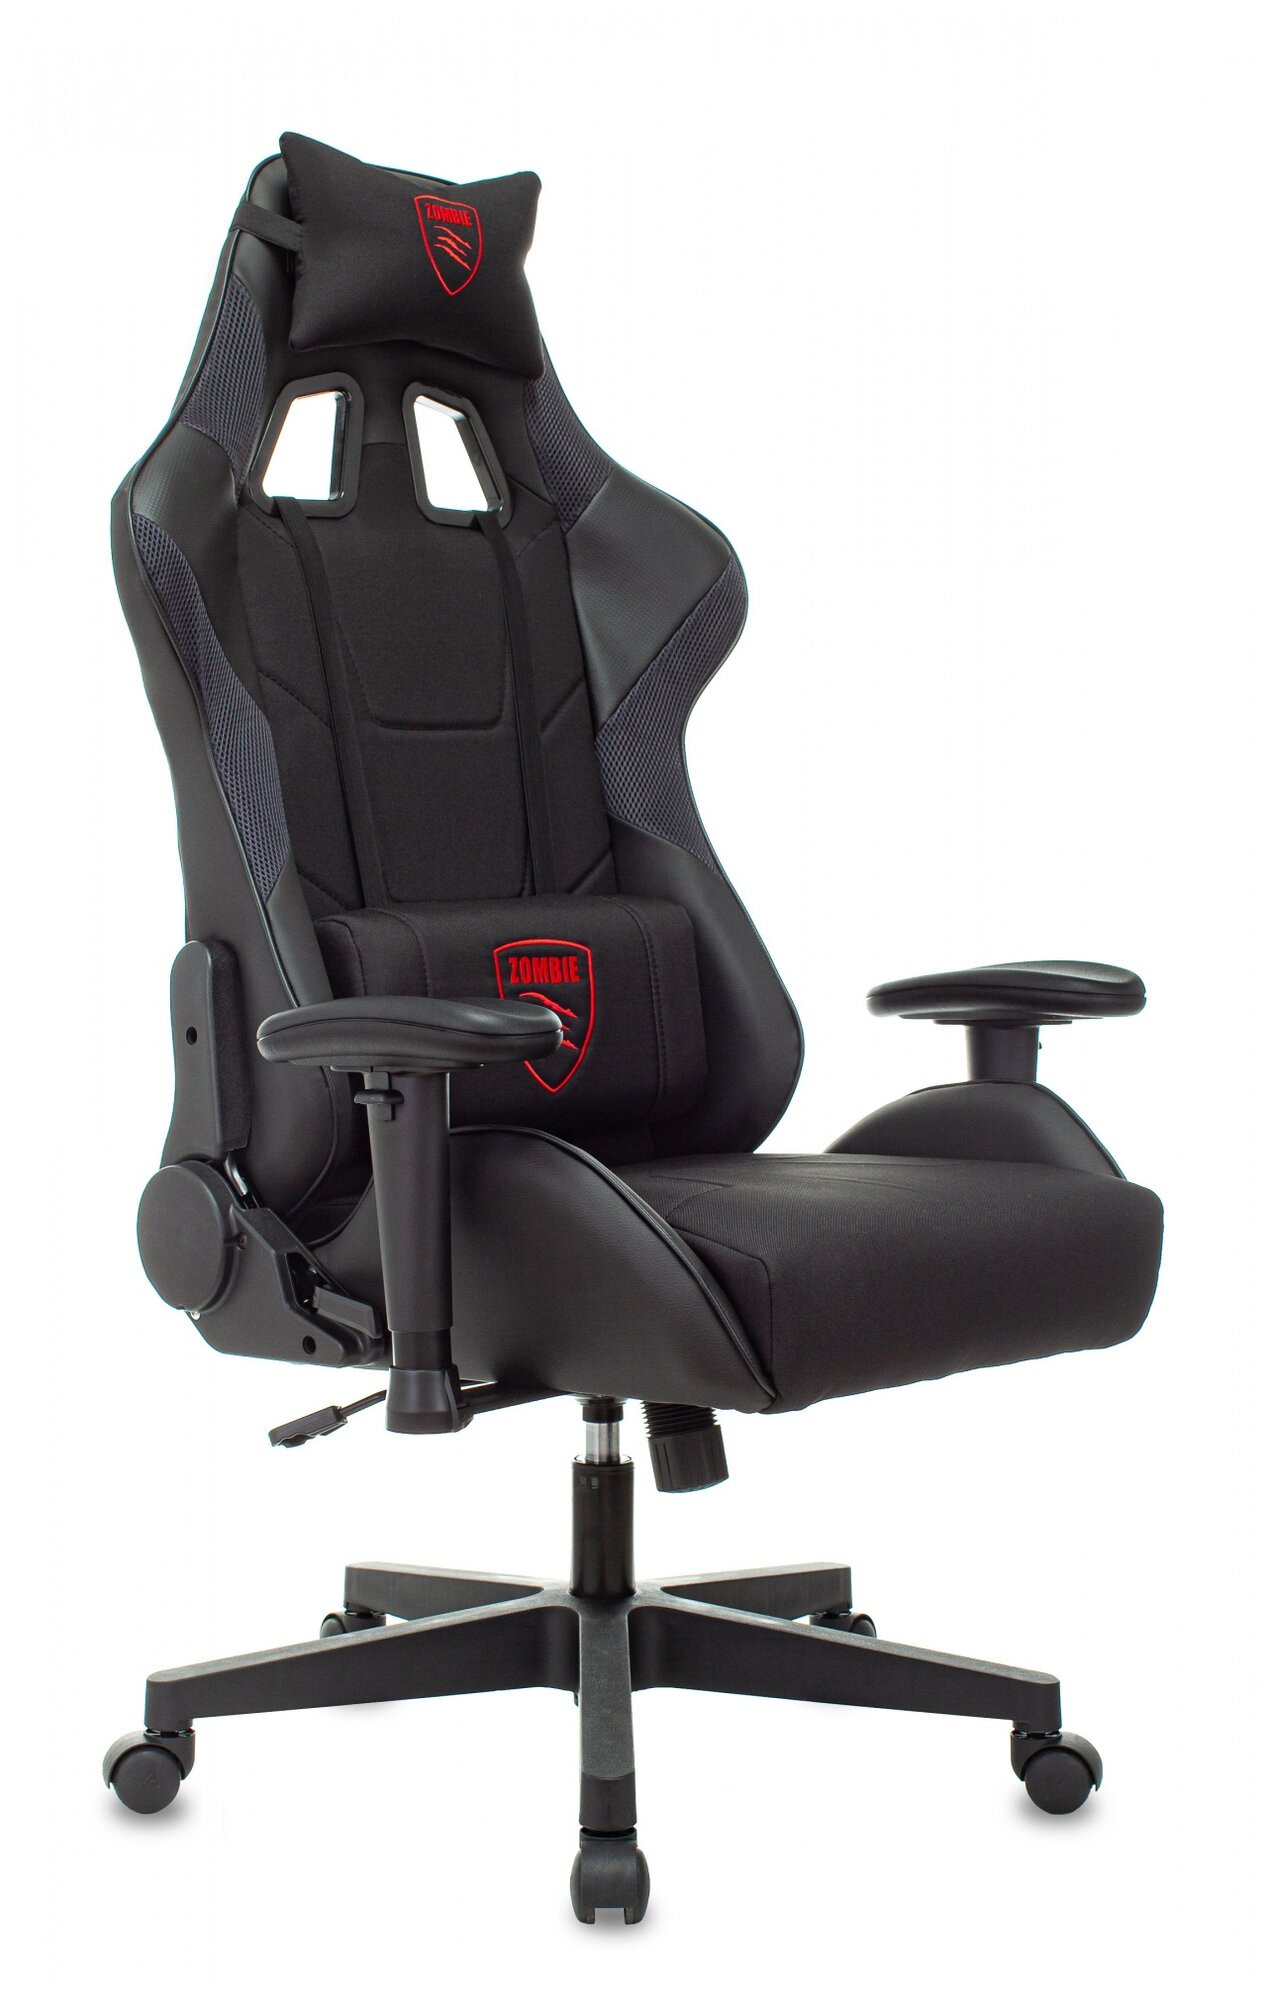 Кресло игровое Zombie Thunder 1, обивка: текстиль/эко. кожа, цвет: черный/карбон